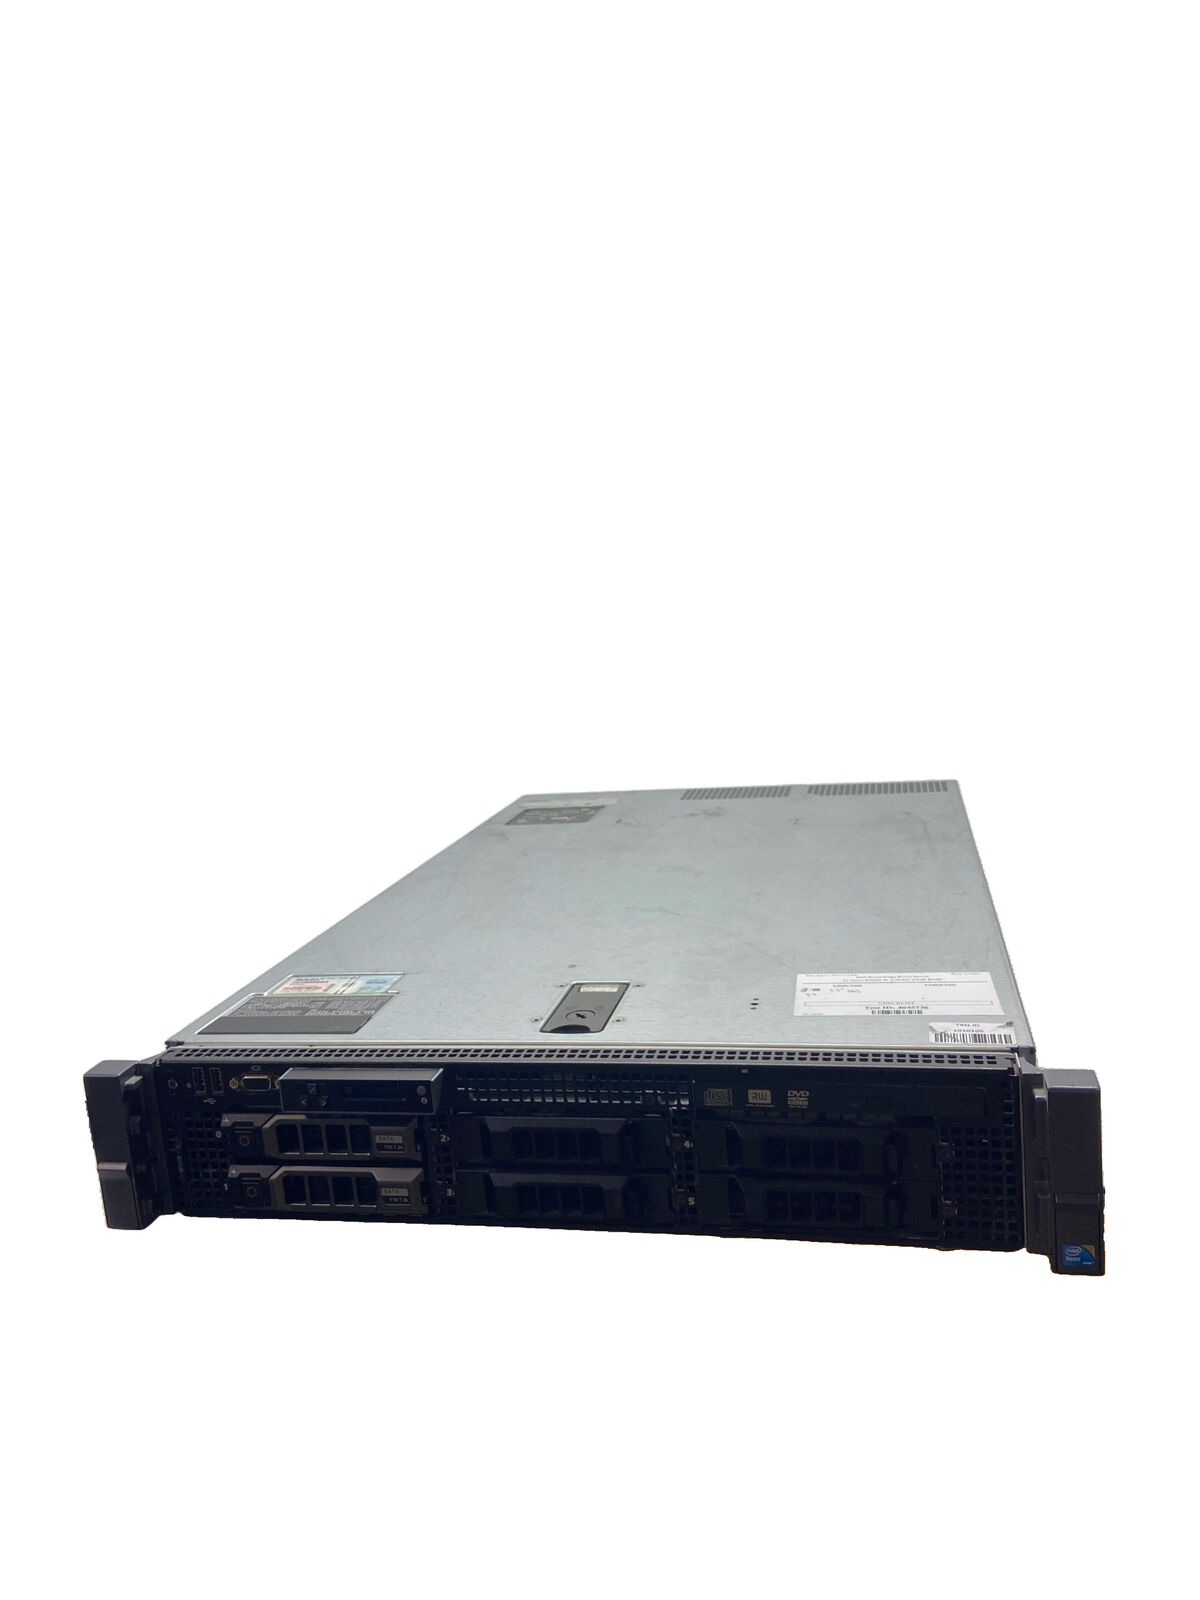 Dell PowerEdge R710 2U Server 2x Intel Xeon E5620 2.4Ghz 32GB RAM 3TB HDD